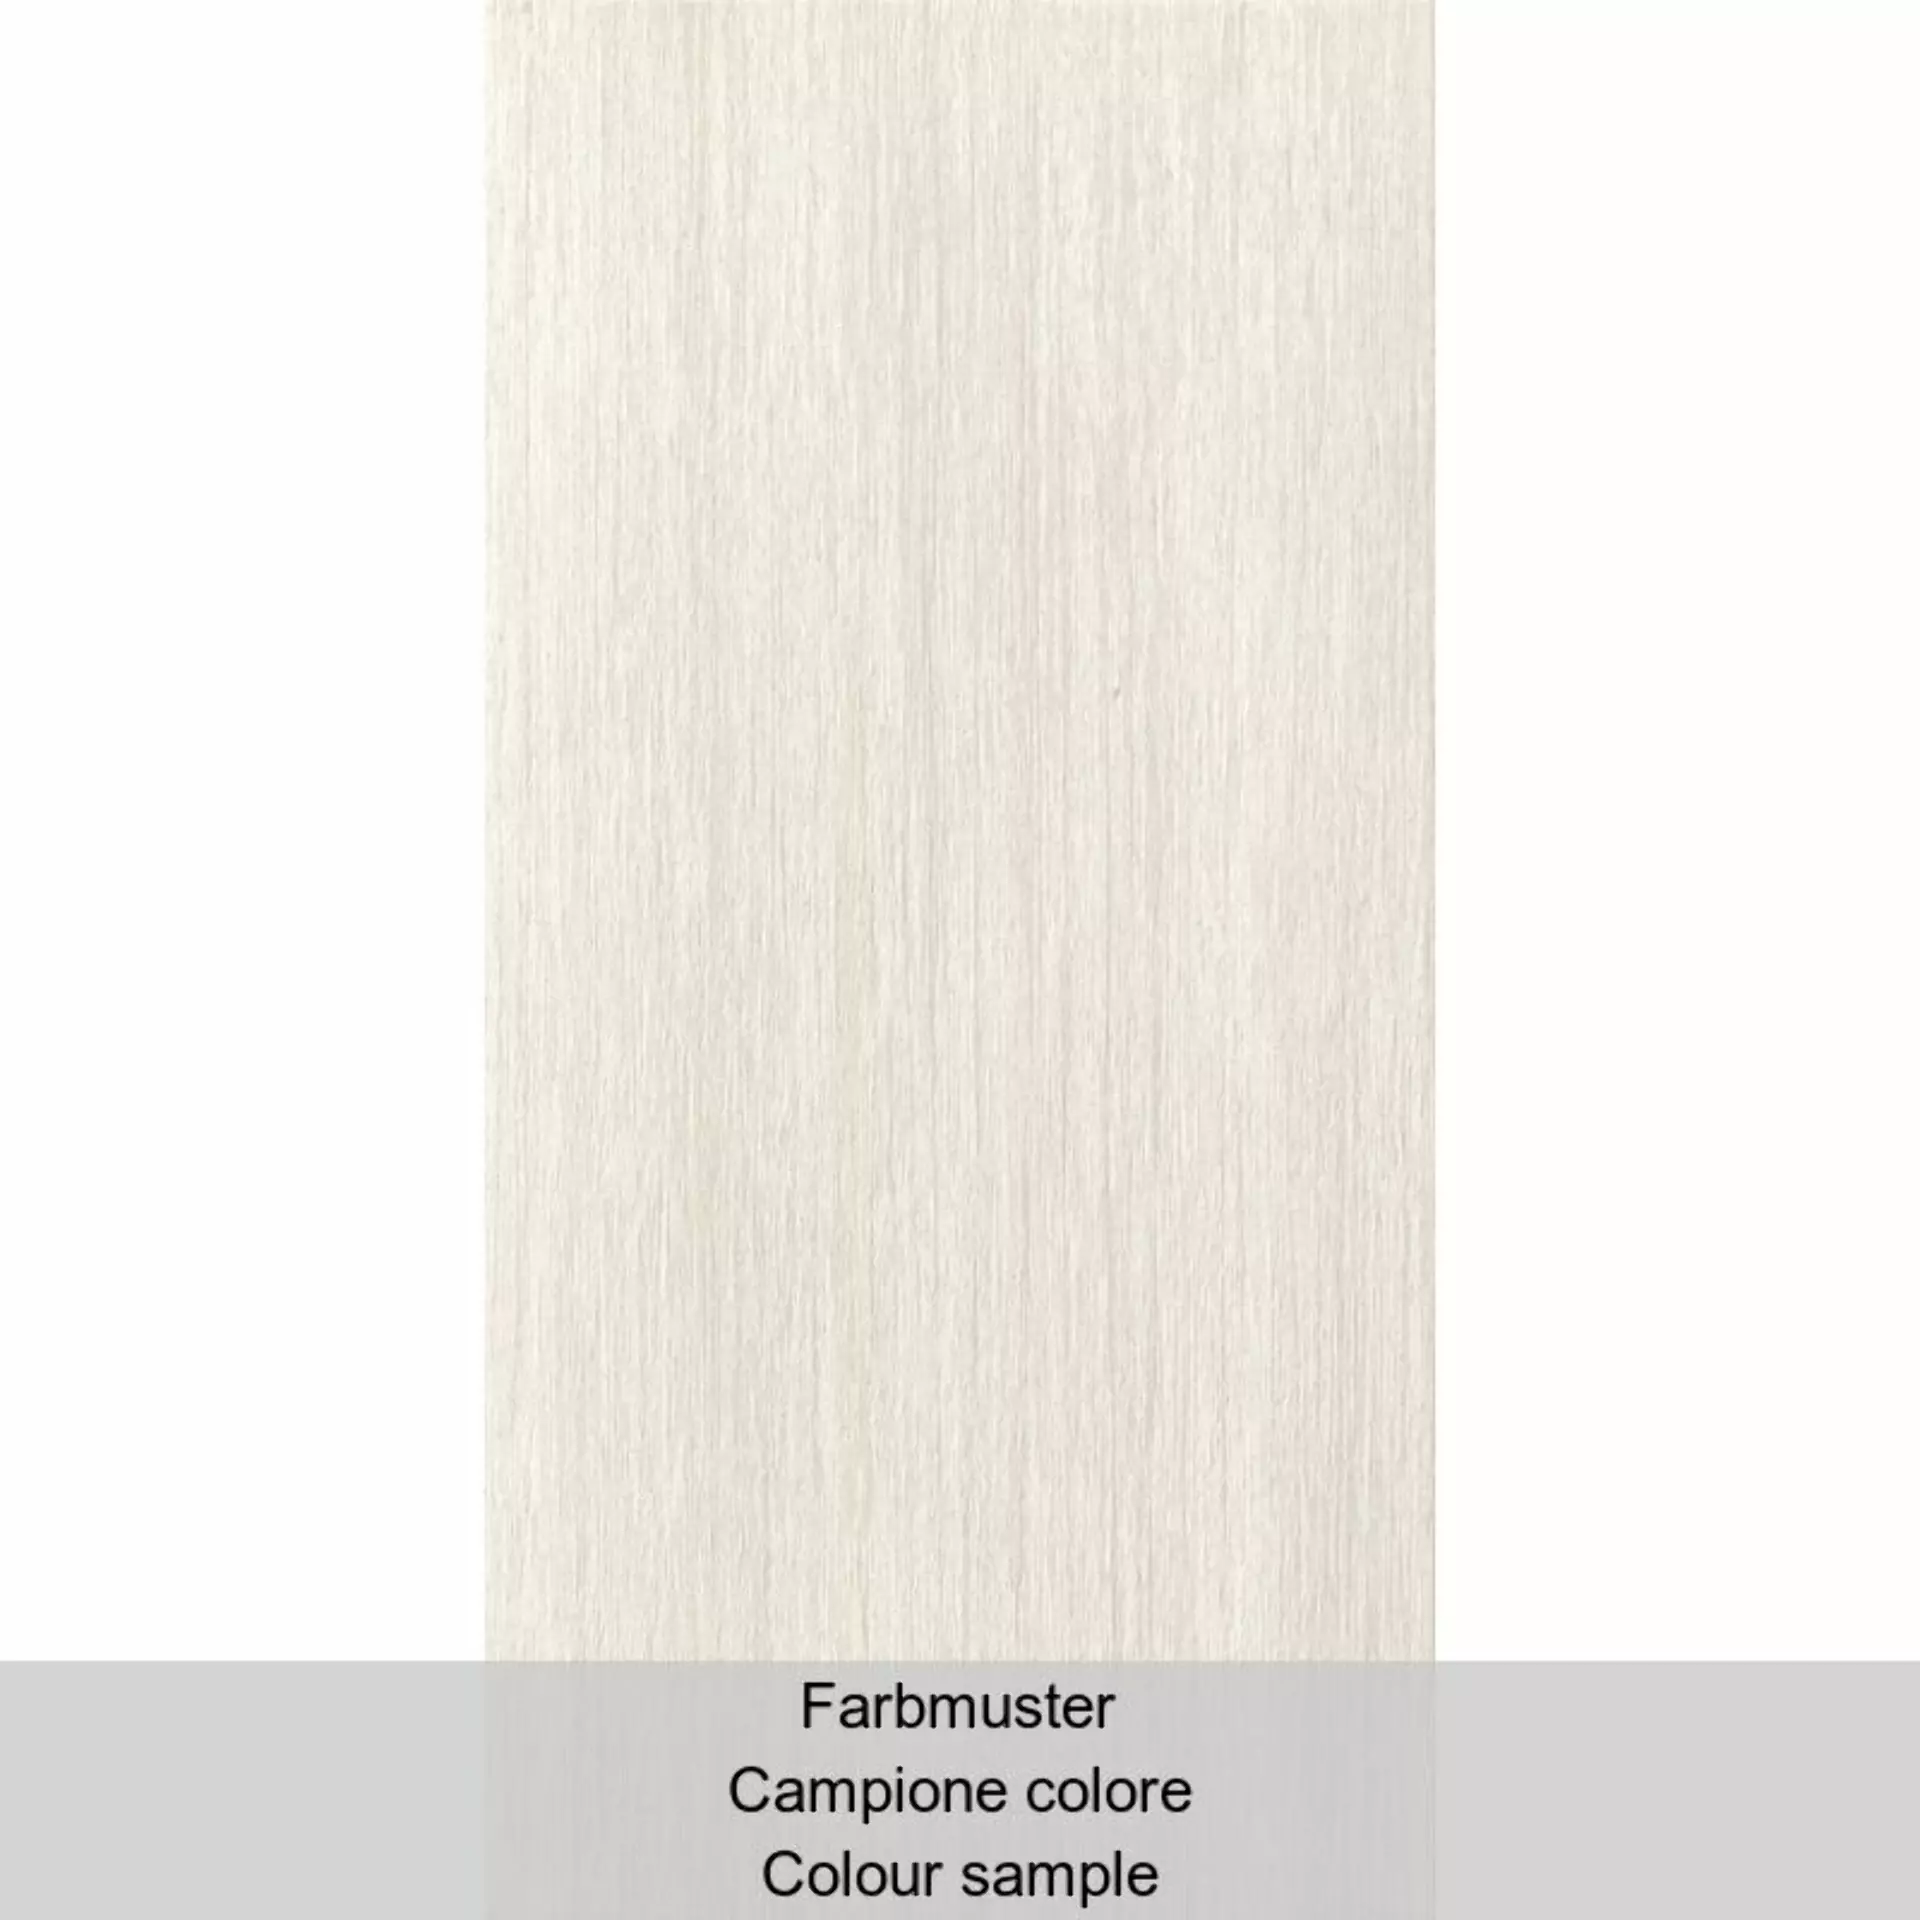 Casalgrande Metalwood Platino Naturale – Matt 6790080 30x60cm rectified 9mm